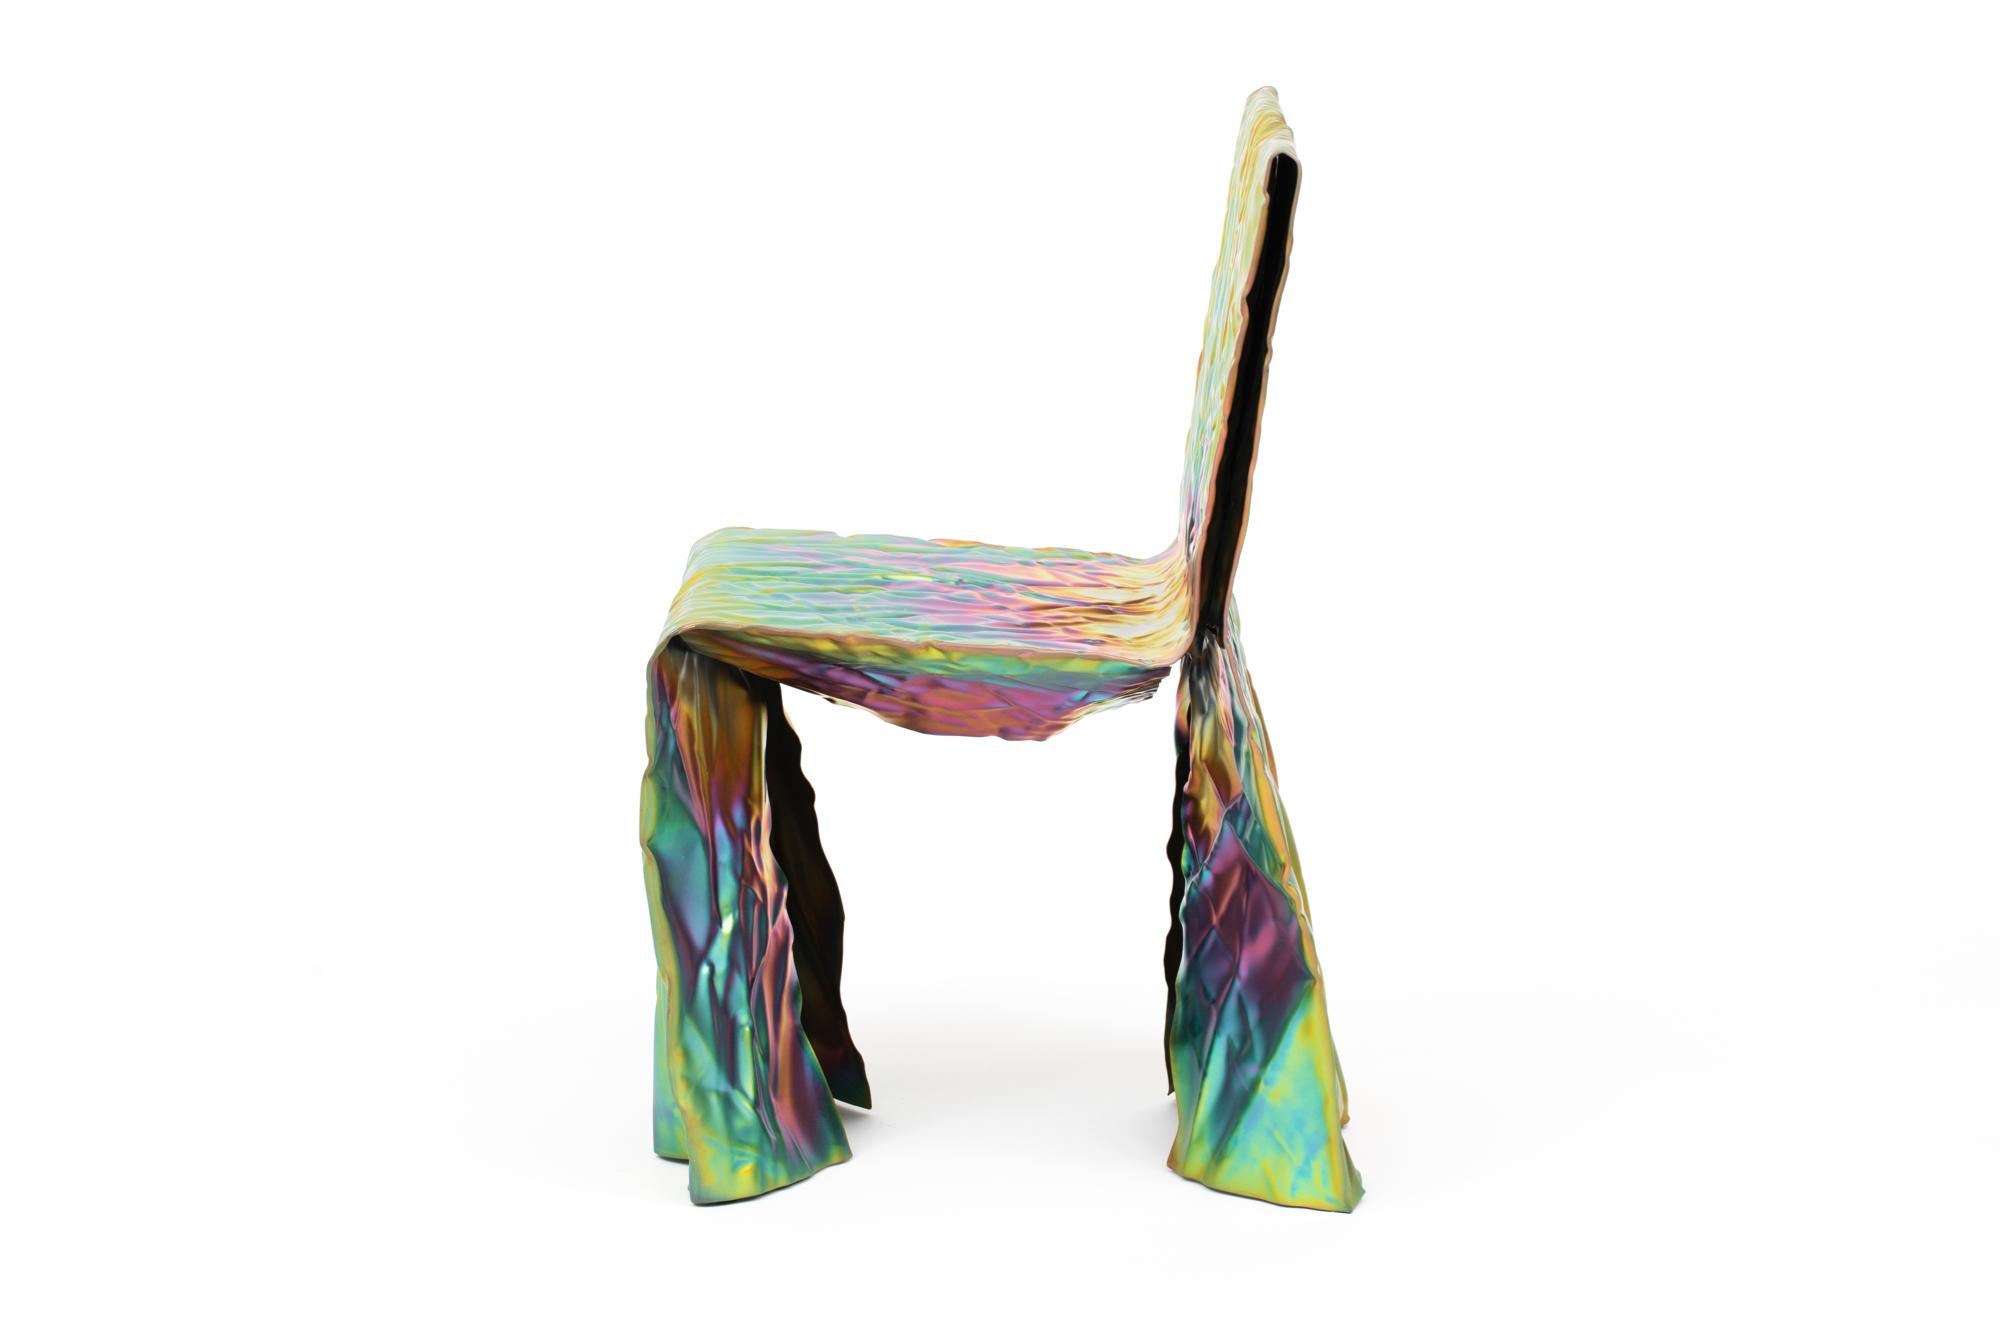 Chaise en acier froissé du designer Christopher Prinz, basé à Omaha, qui obtient cette texture inhabituelle en froissant à plusieurs reprises une fine feuille d'acier, ce qui donne une forme solide, rigide et unique. Les pieds de nivellement cachés